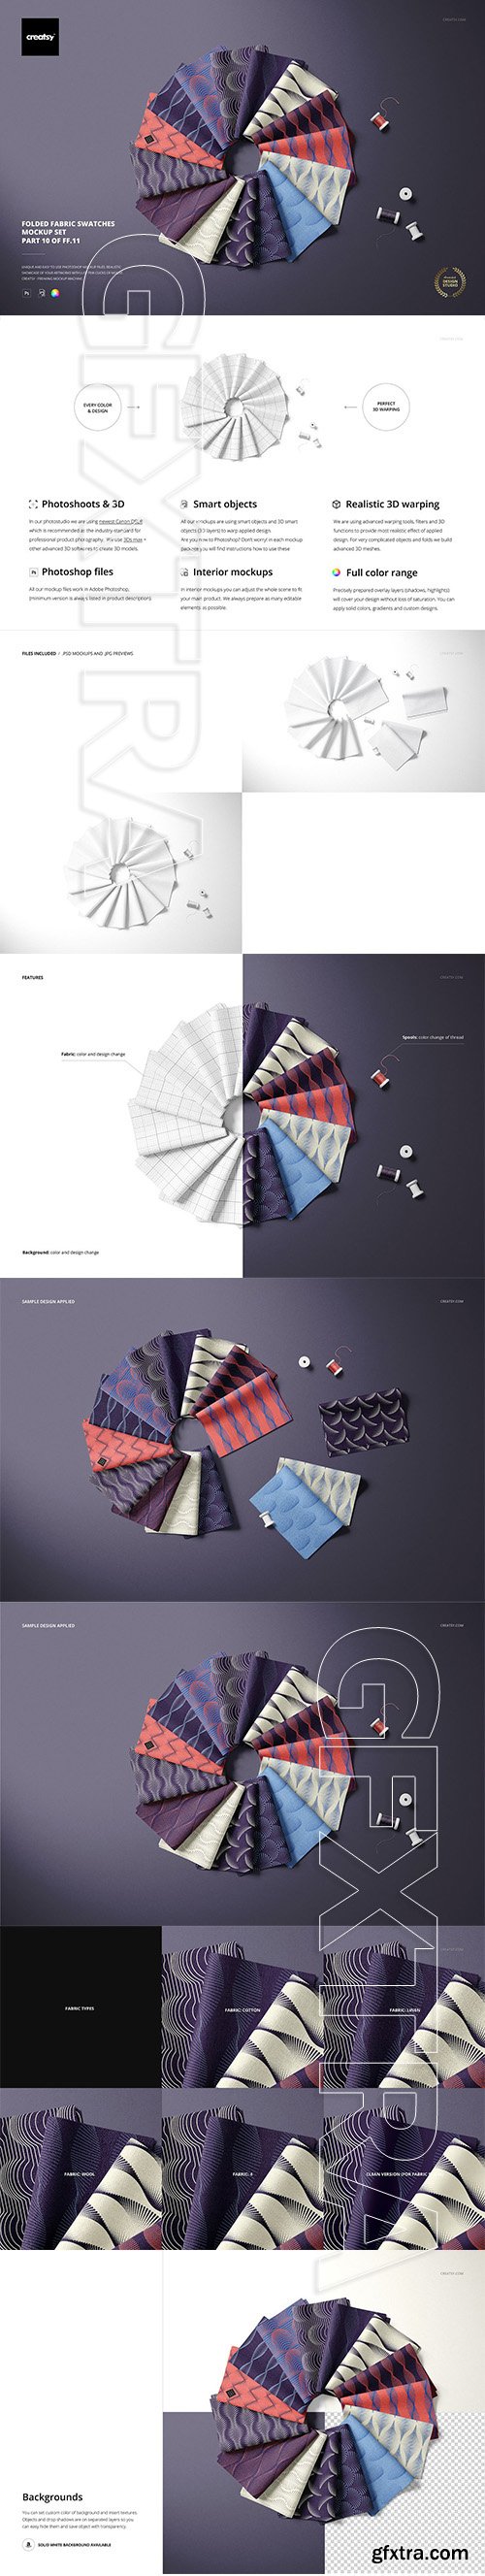 CreativeMarket - Folded Fabric Swatches Mockup Set 5459769